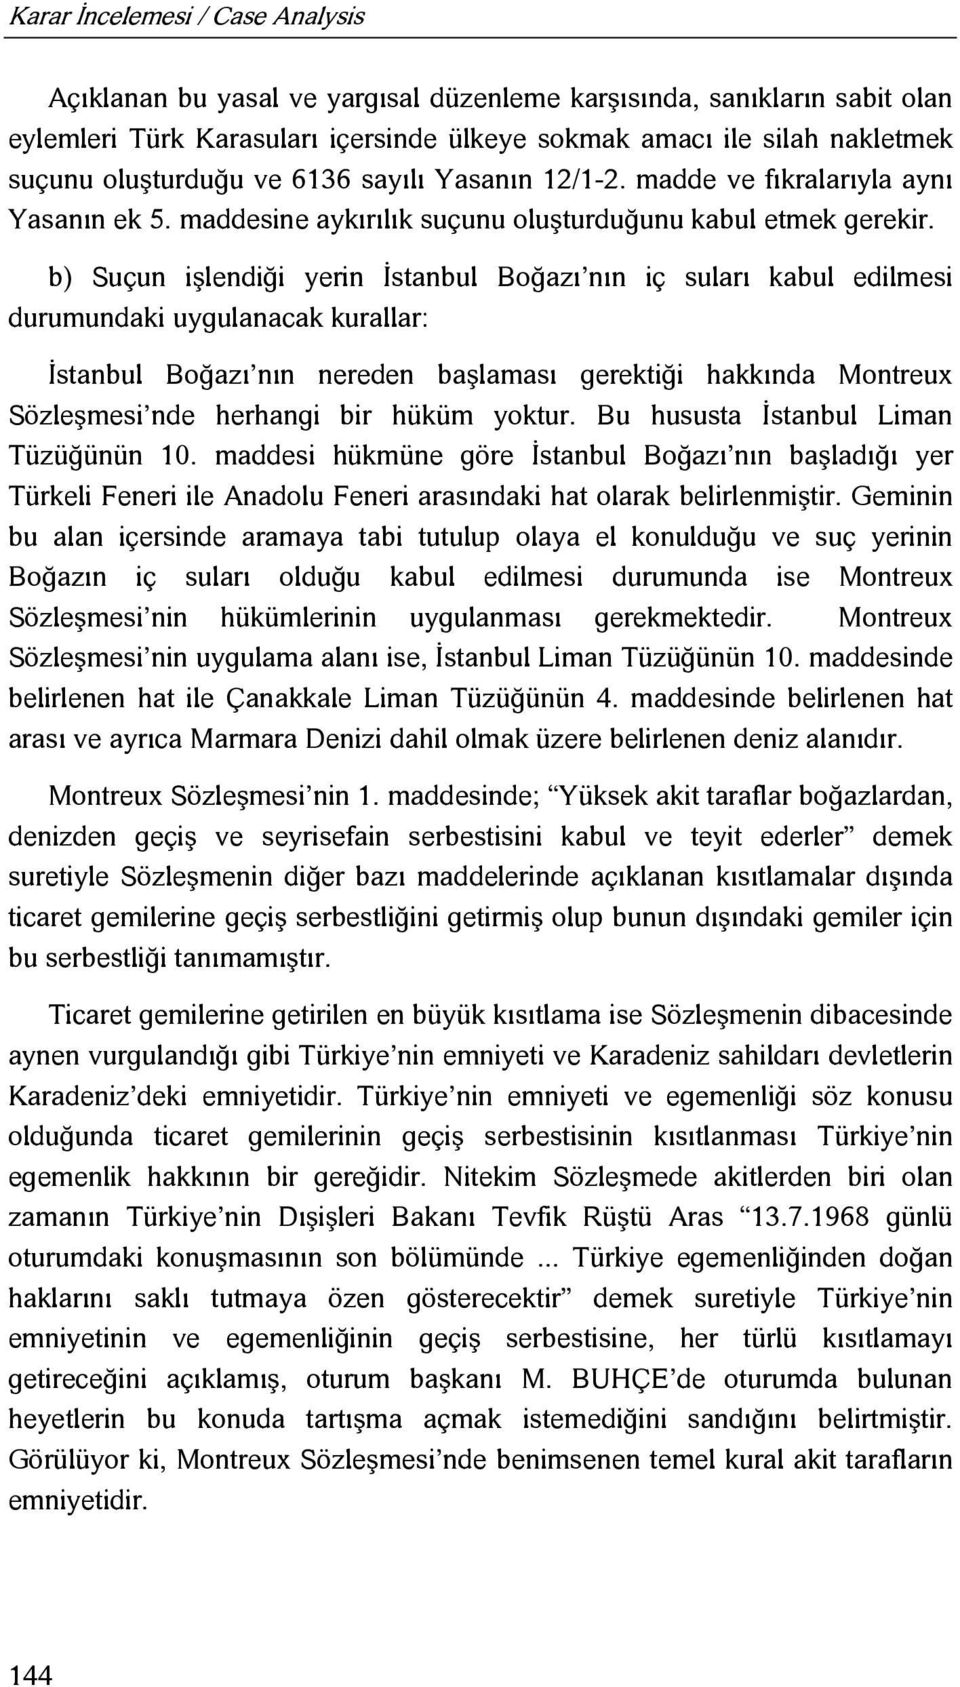 b) Suçun işlendiği yerin İstanbul Boğazı nın iç suları kabul edilmesi durumundaki uygulanacak kurallar: İstanbul Boğazı nın nereden başlaması gerektiği hakkında Montreux Sözleşmesi nde herhangi bir